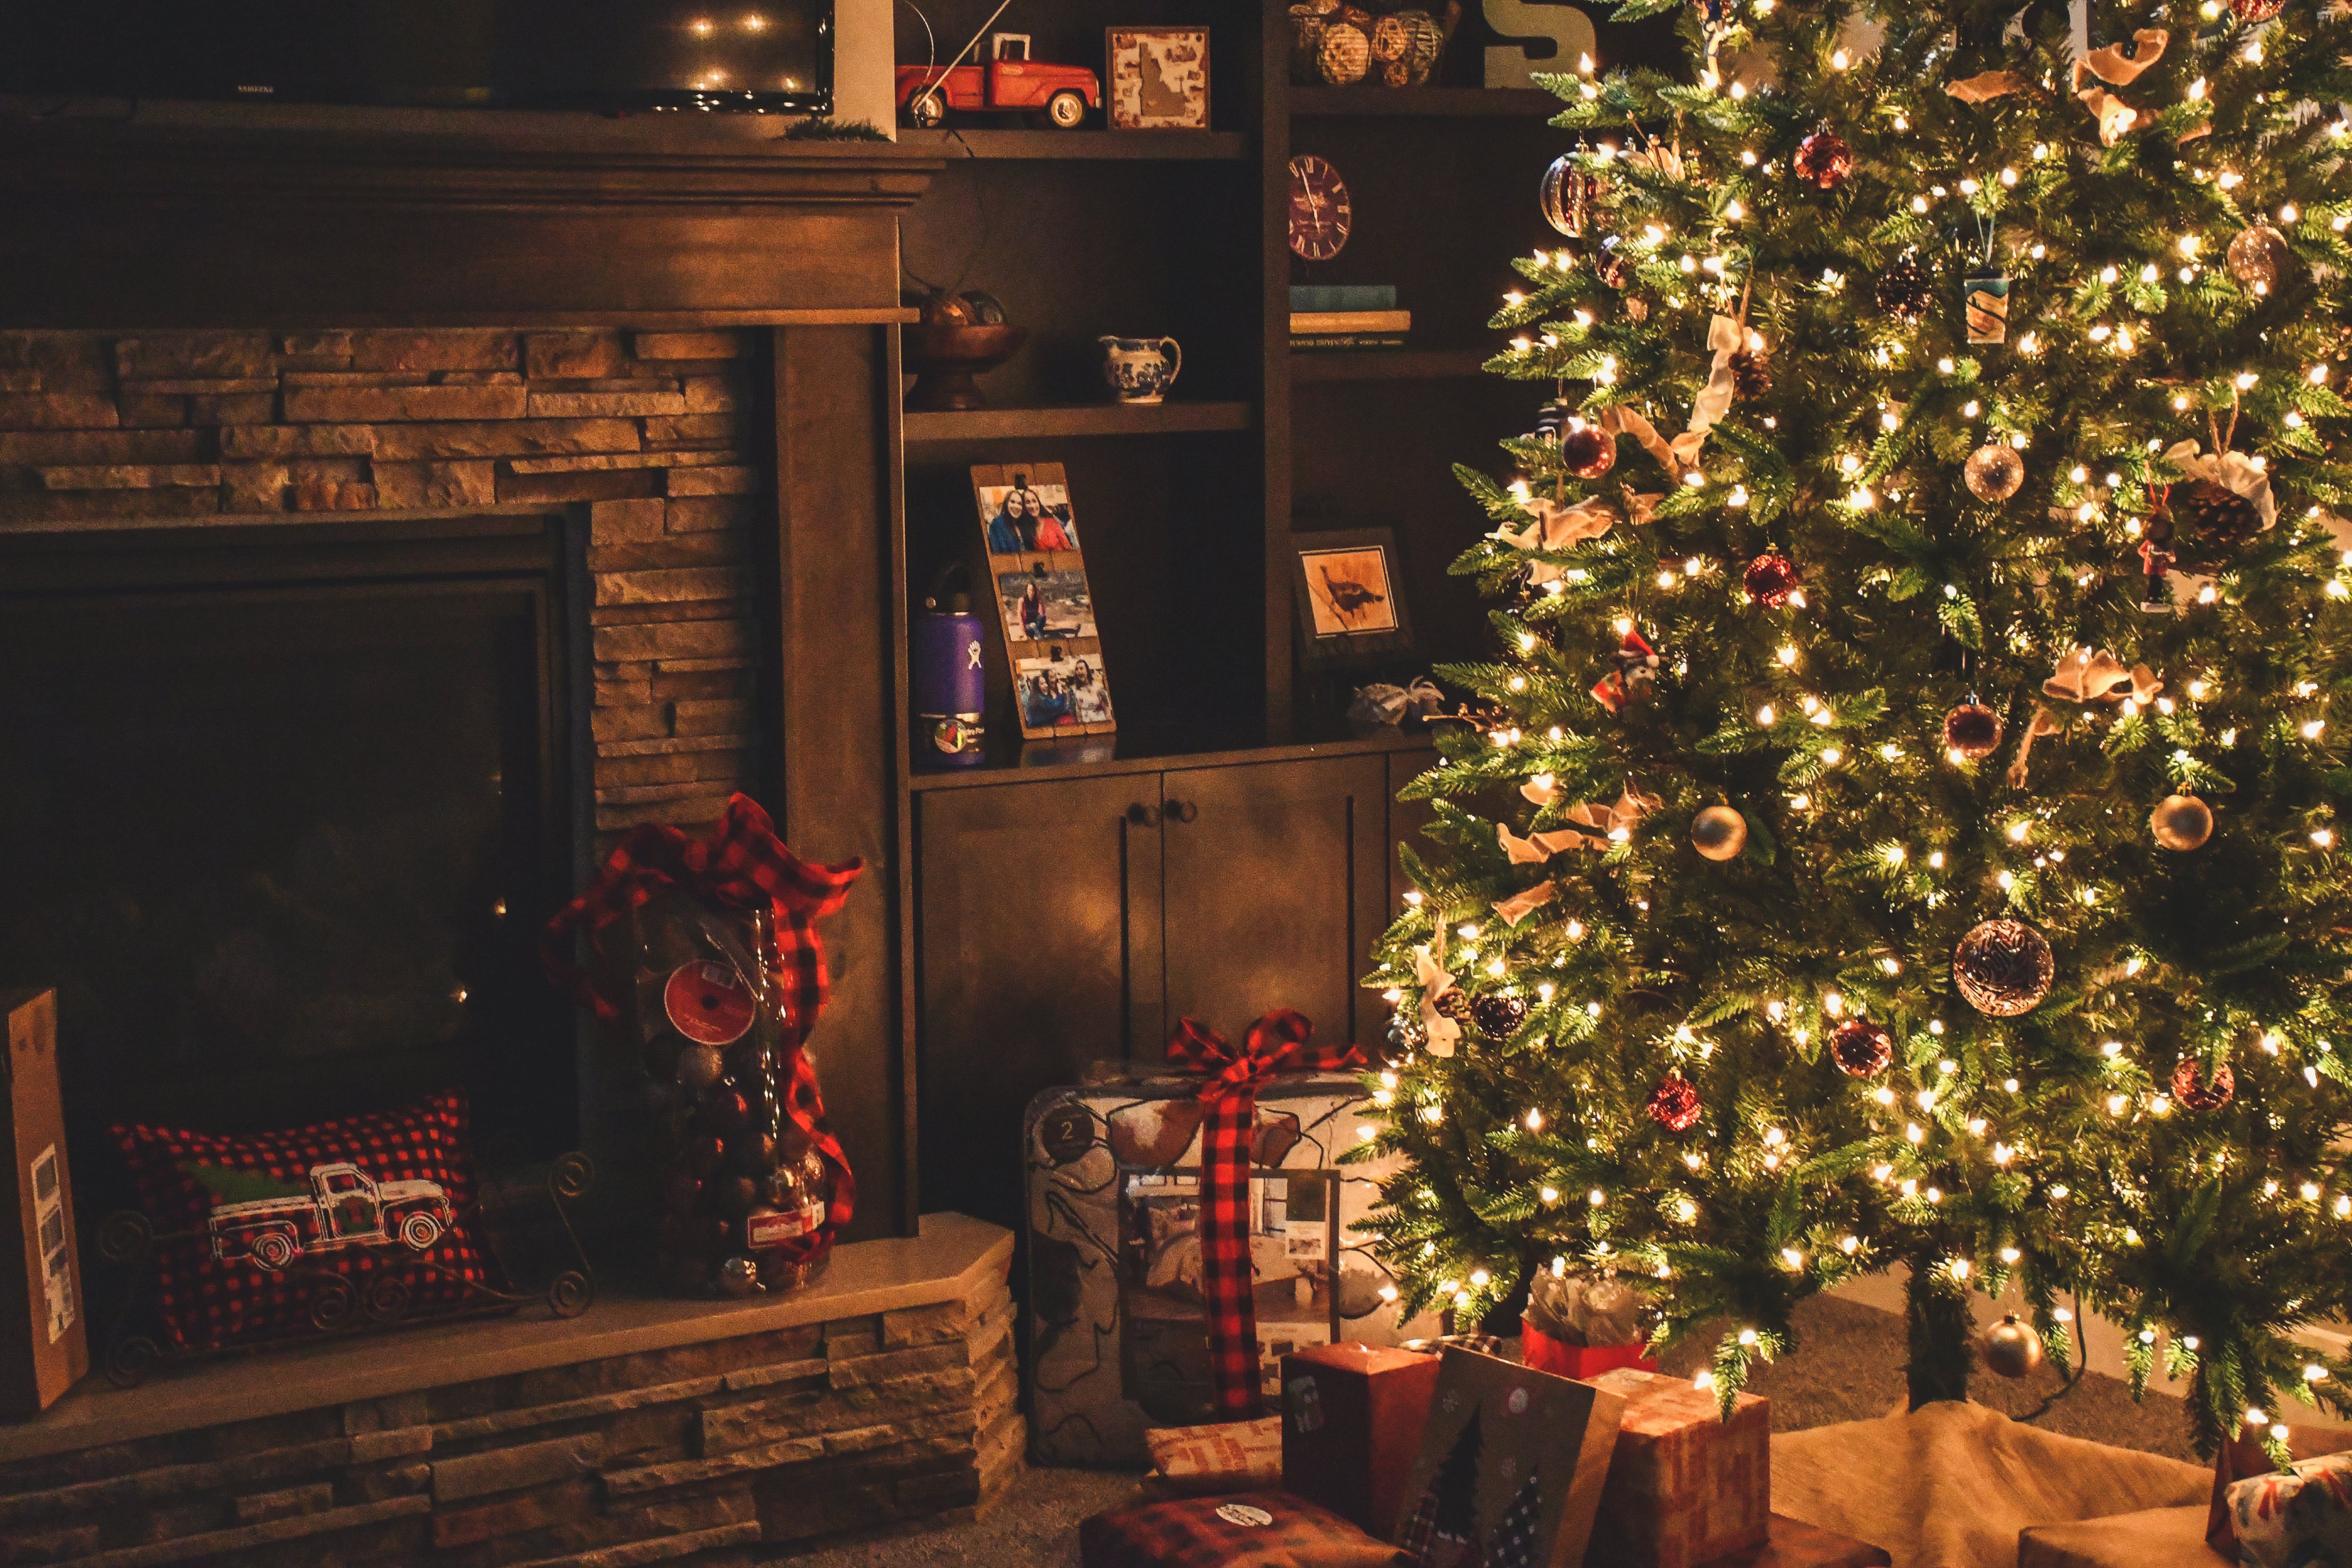 Weihnachtsbaum mit Geschenken darunter | Quelle: Pexels